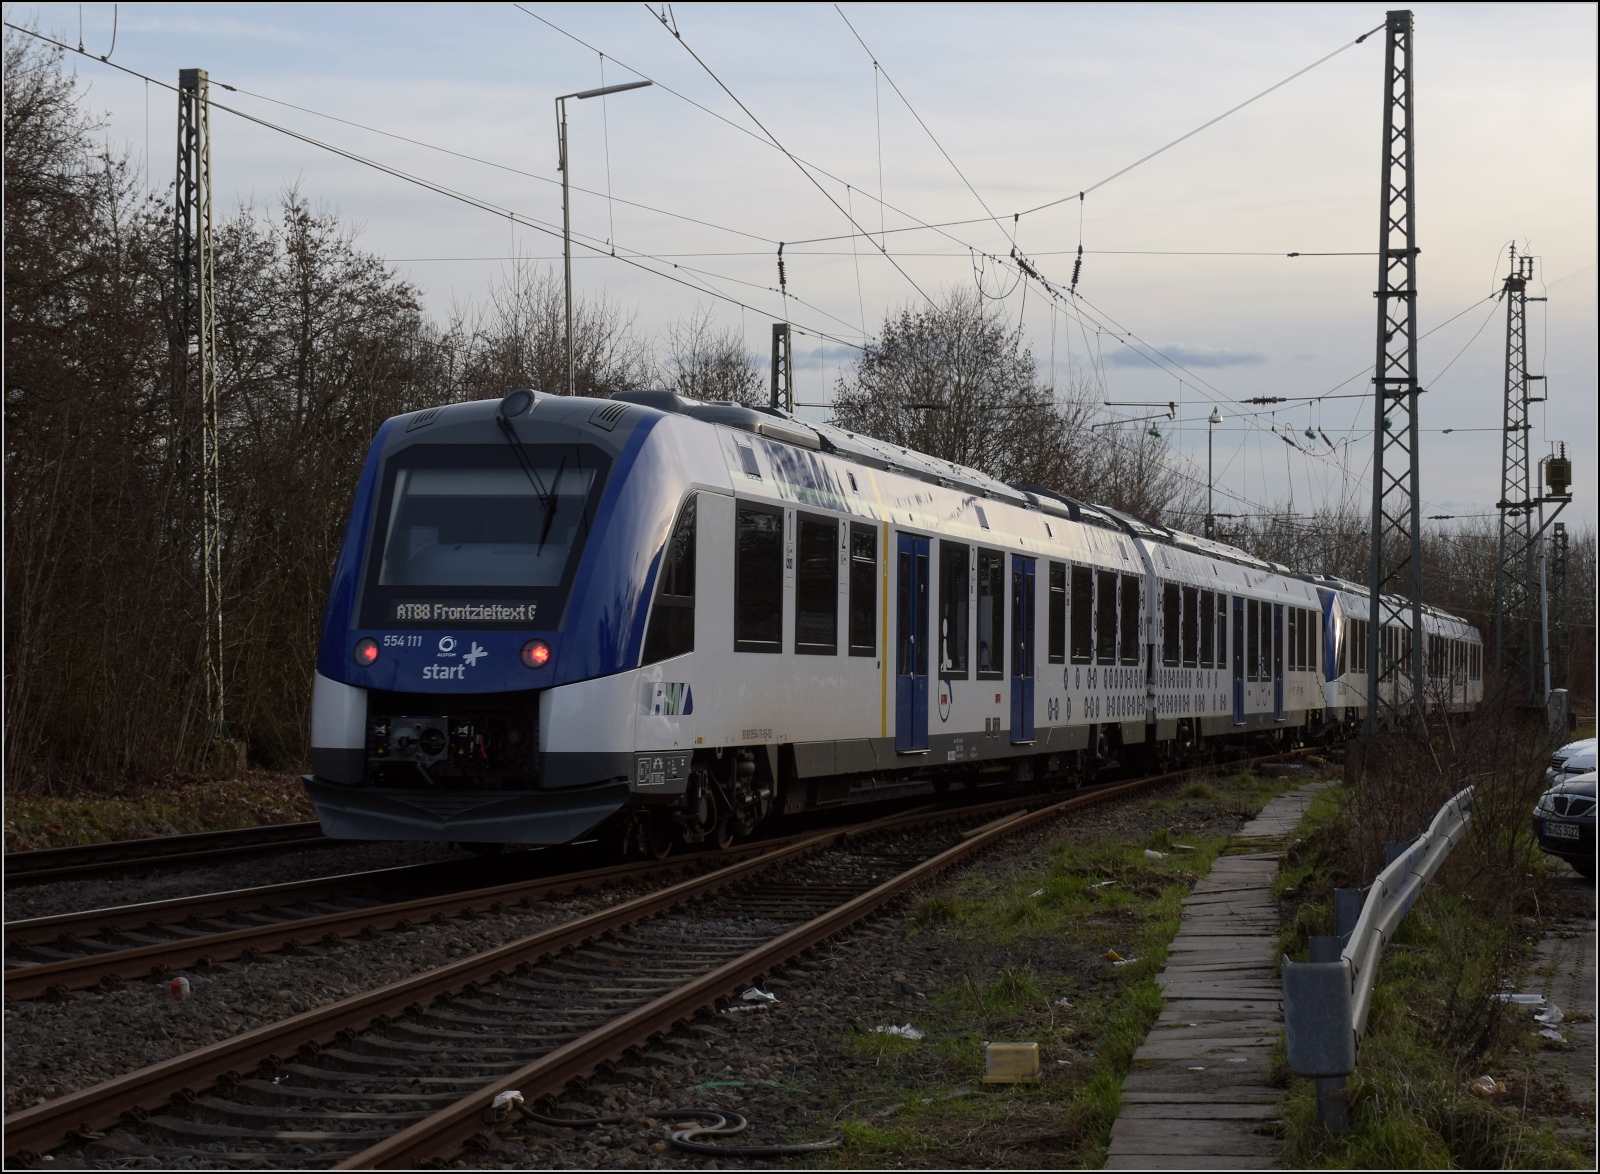 Momentan mehr Vaporware als Hardware auf Gleisen ist der iLint. 

554 112 und 554 111 bei Abfahrt in Friedrichsdorf als AT 88 nach Frontzieltext G. Dezember 2022.